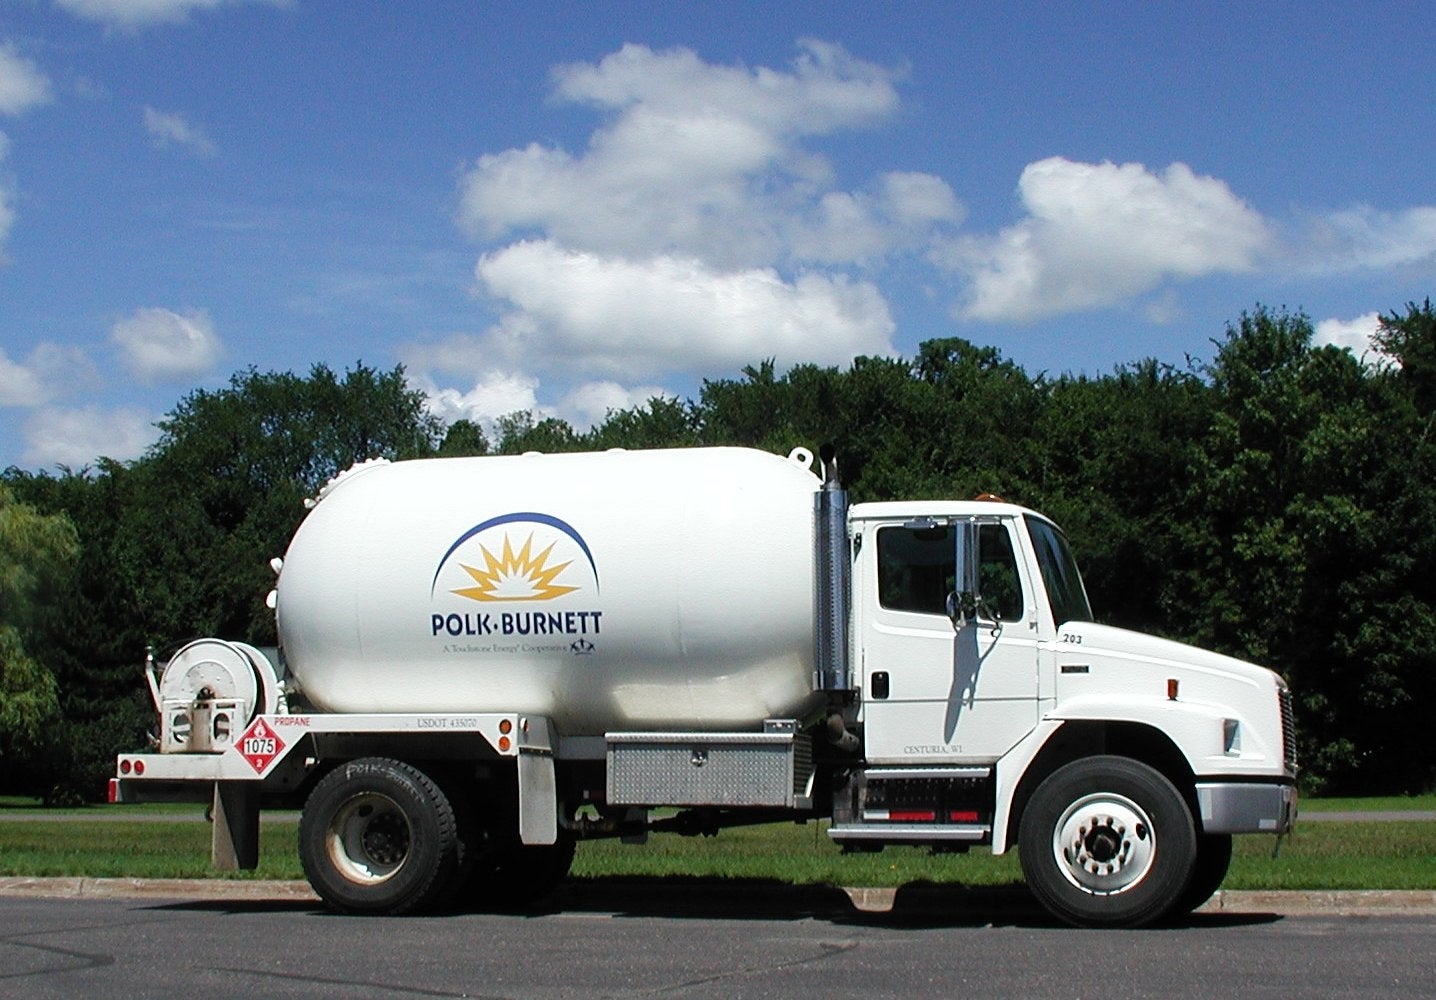 Polk-Burnett Propane began in 1996.